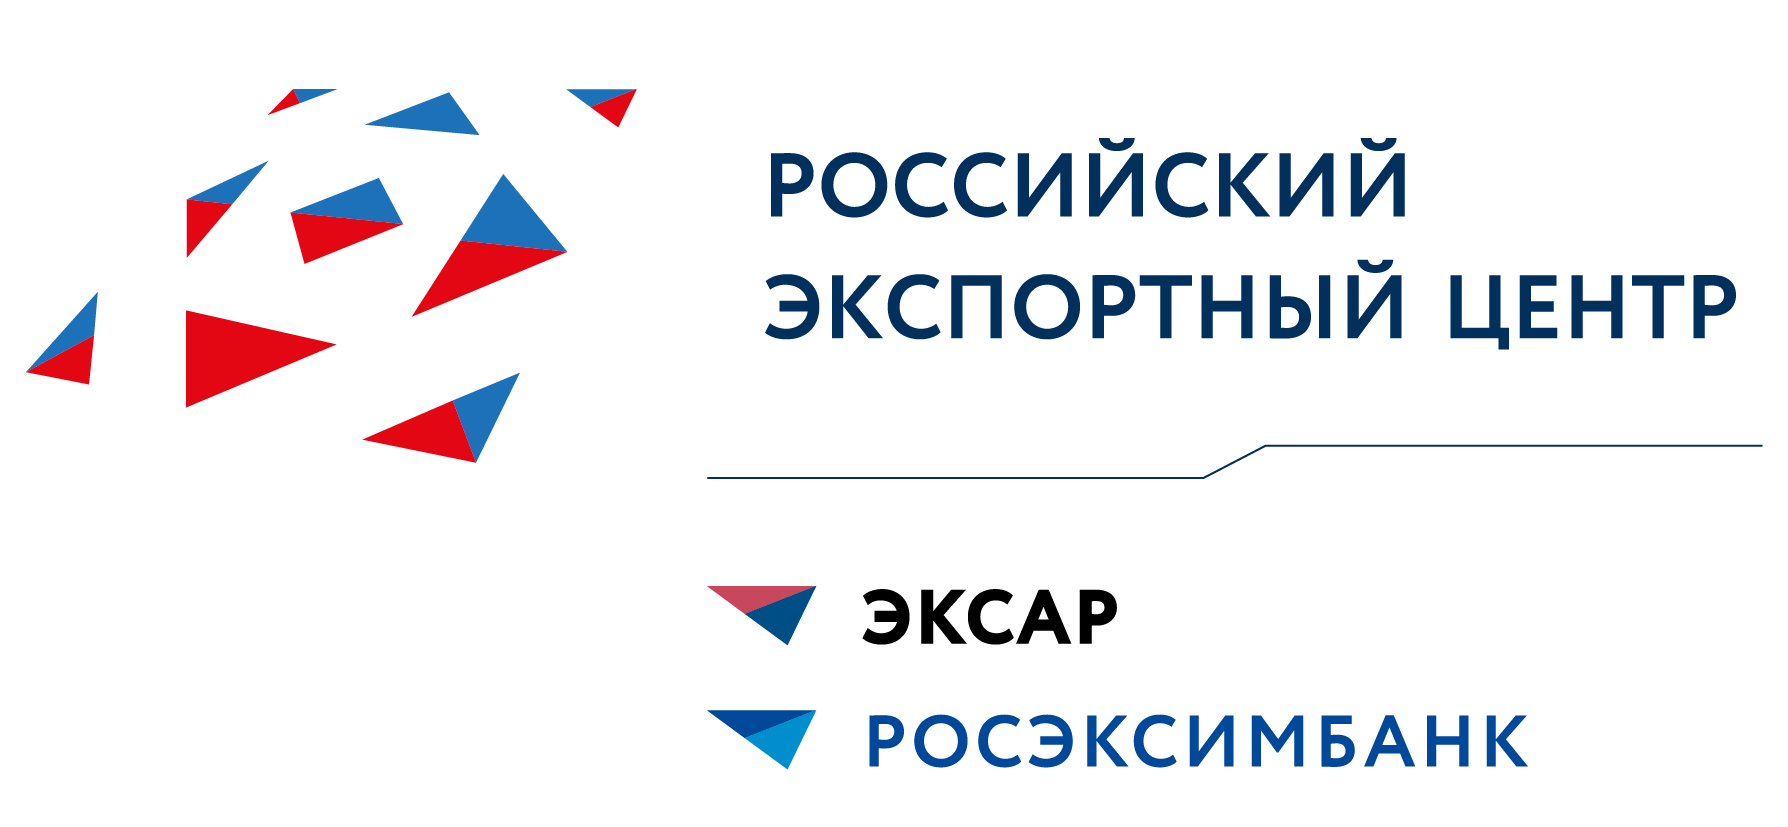 Семинар: Продукты Группы Российского экспортного центра в Рязани